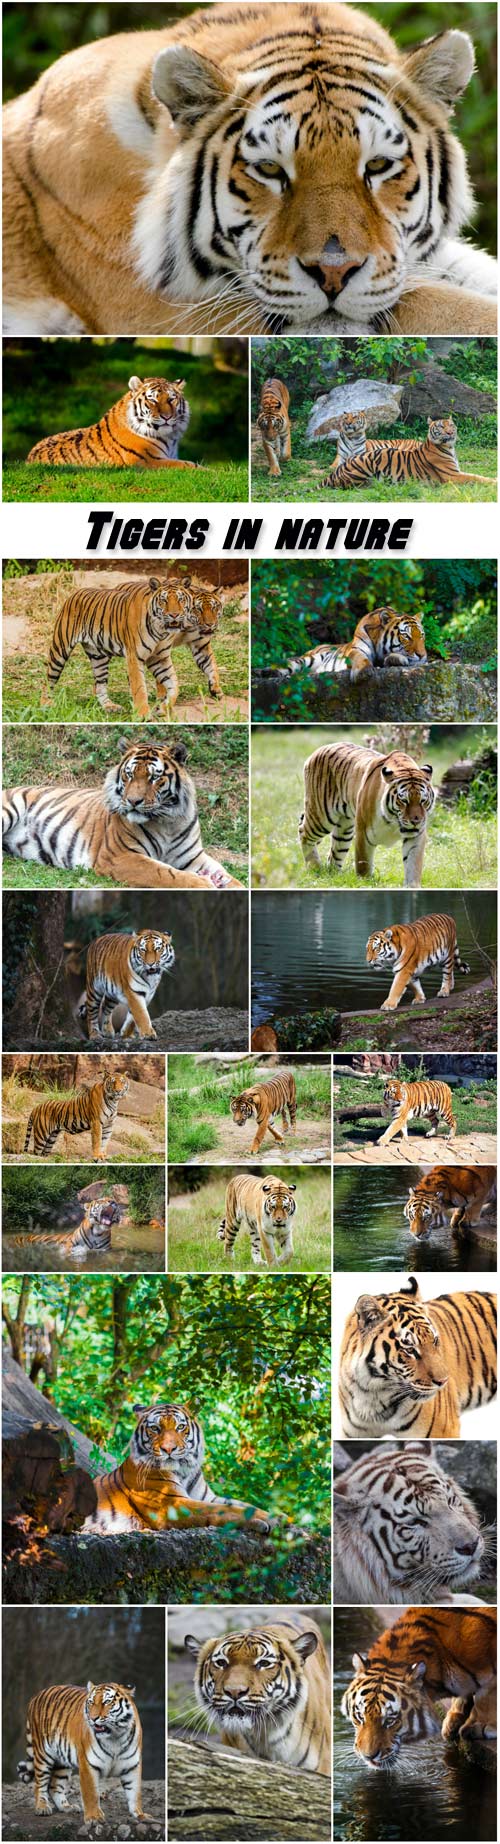 Tigers in nature, predators